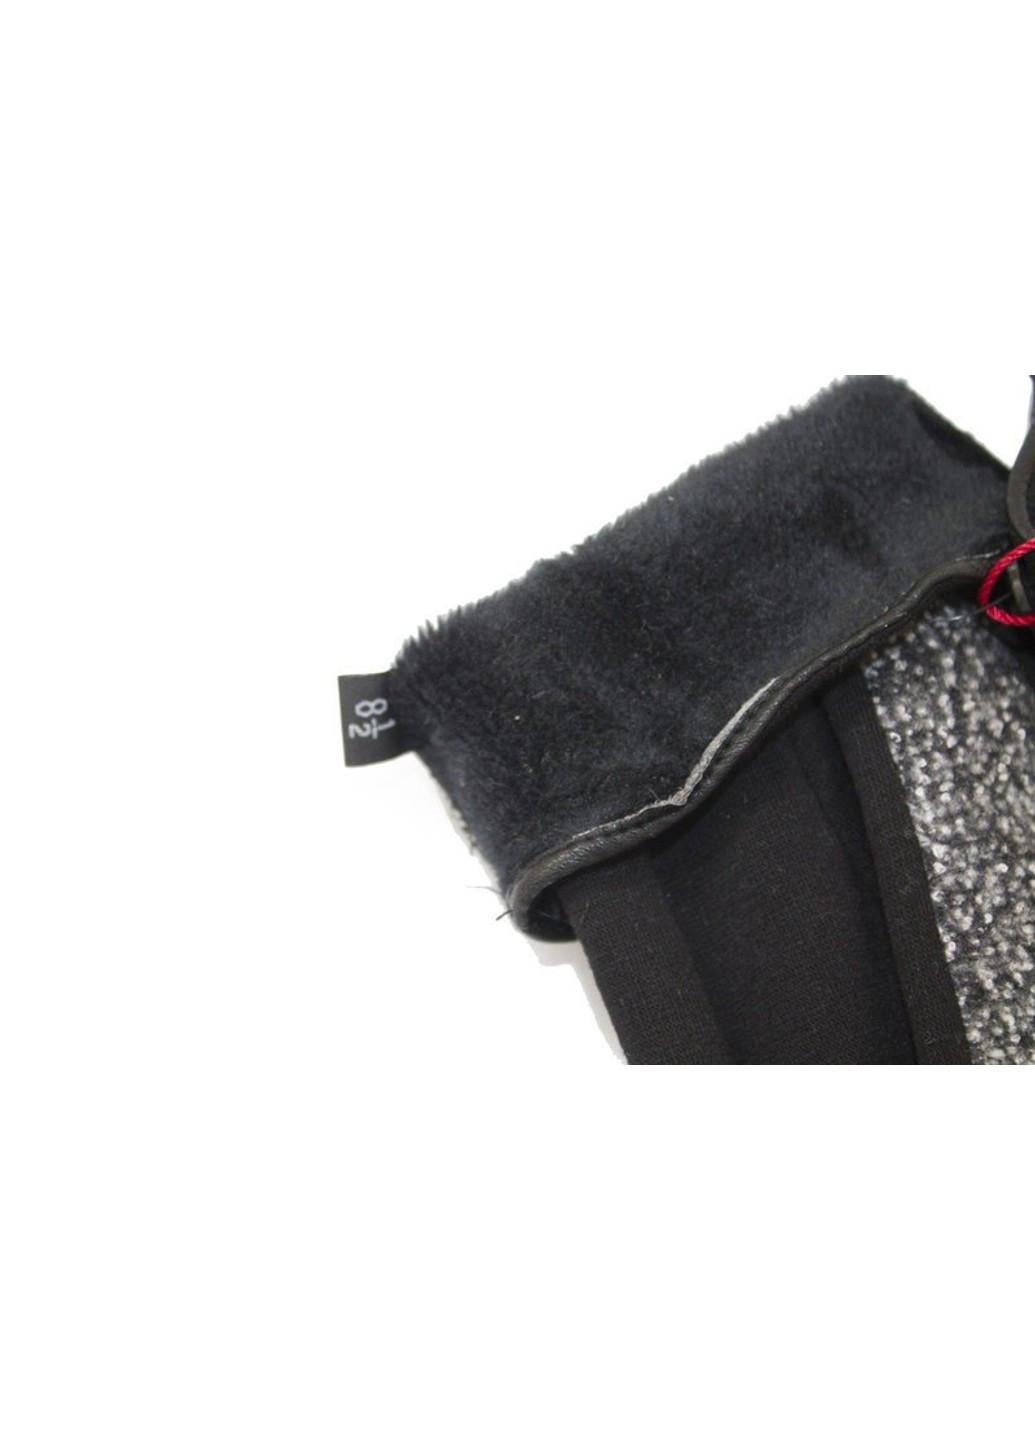 Комбинированные стрейчевые женские перчатки Shust Gloves (261853573)